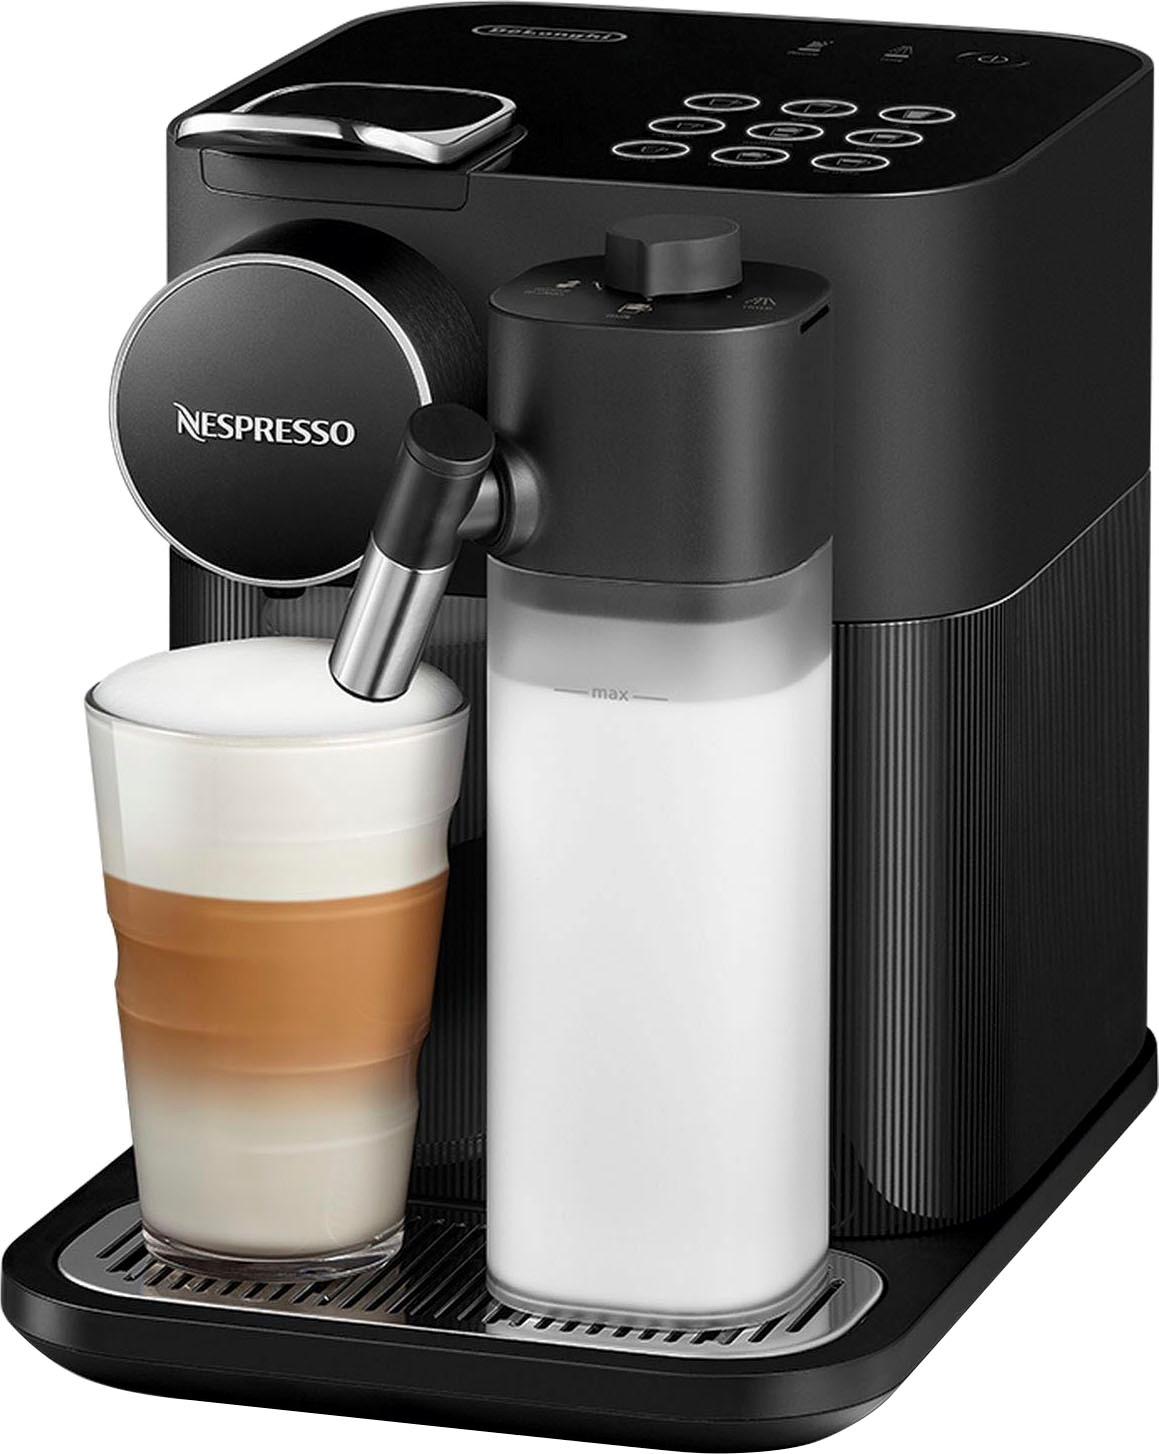 Nespresso Kapselmaschine »EN640.B von DeLonghi, schwarz«, inkl. Willkommenspaket mit 7 Kapseln